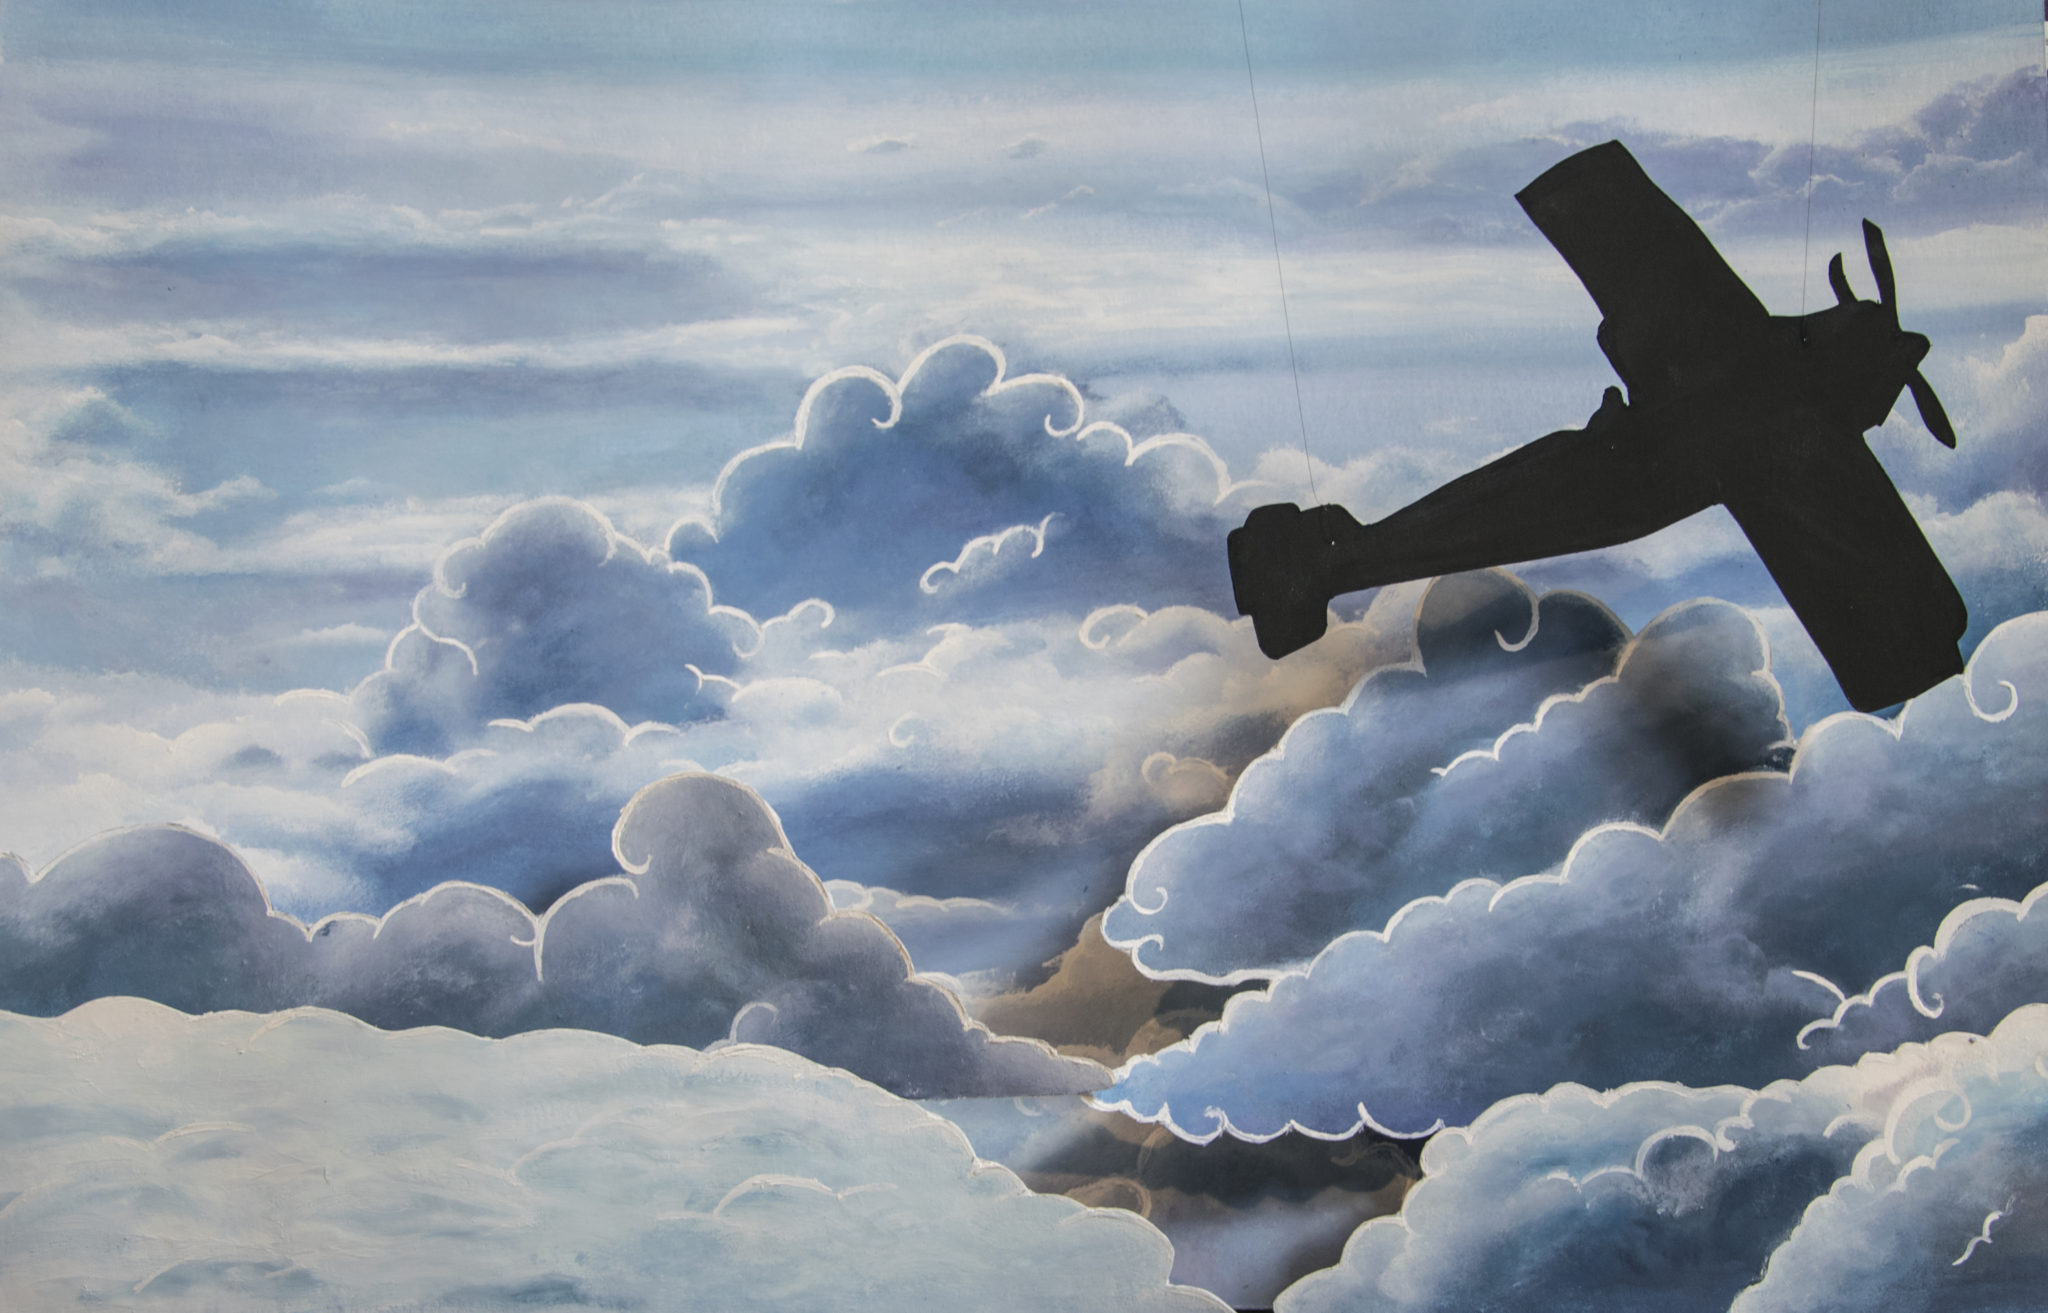 saint exupery avion aventure gouache acrylique peinture ciel bleu diane corbin